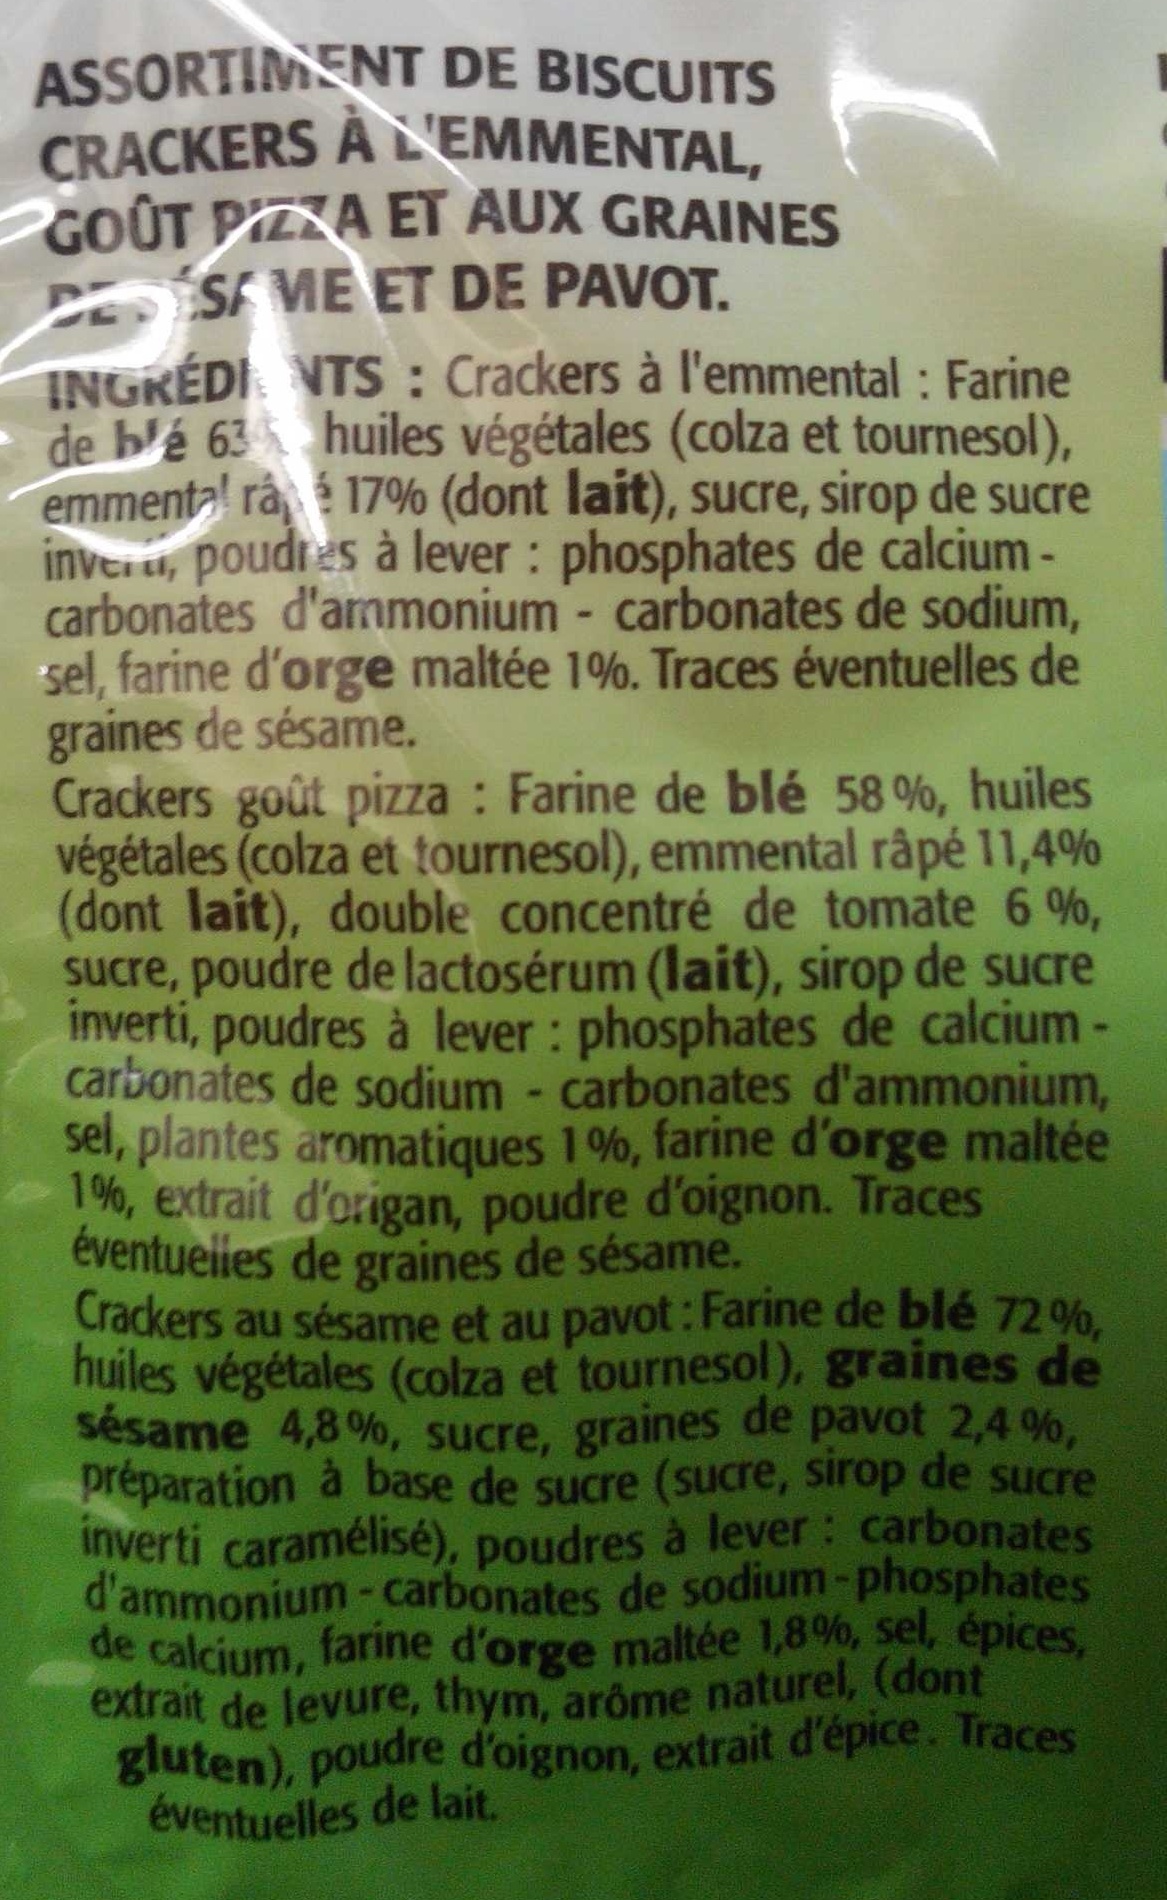 Coffret de biscuits crackers - Ingredients - fr